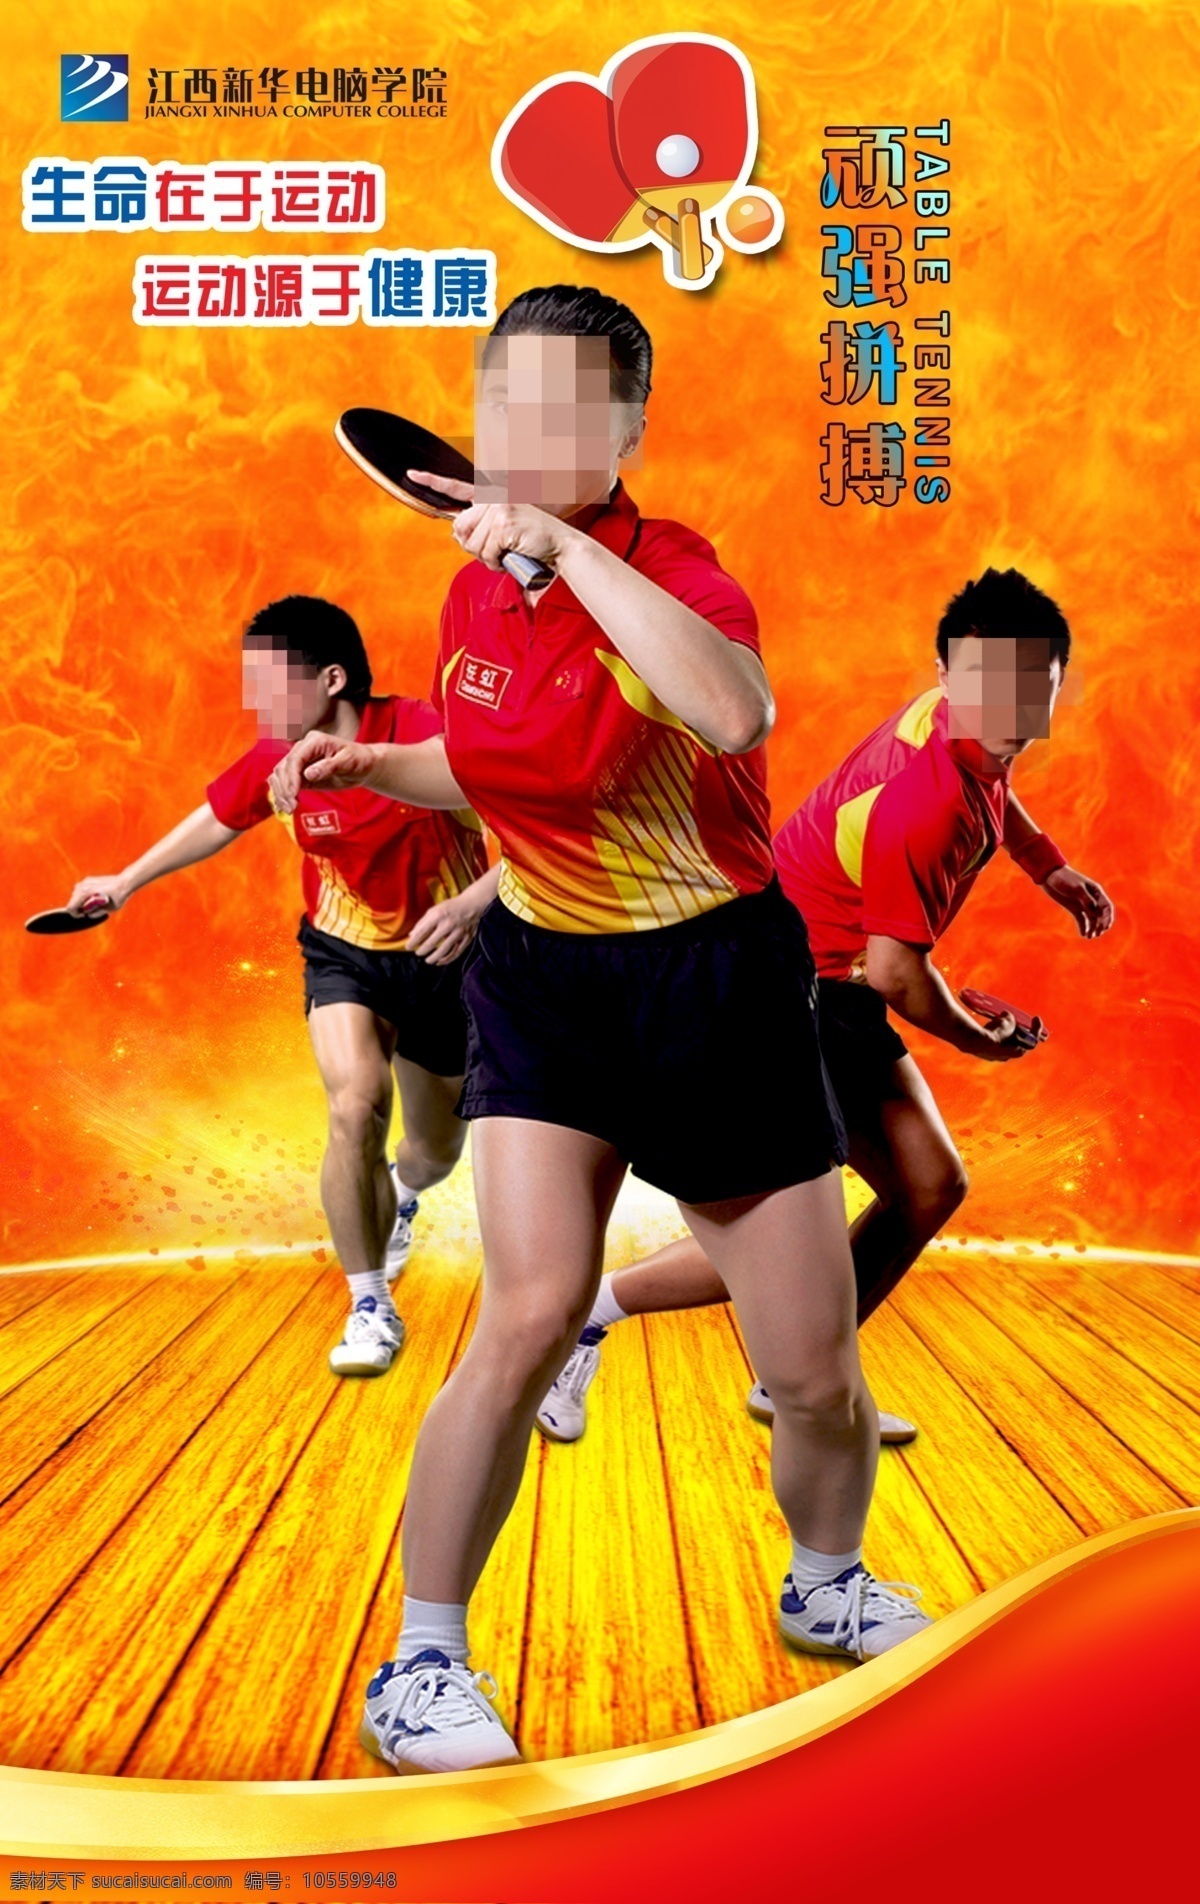 乒乓球 乒乓球海报 青少年乒乓球 海报 乒乓球比赛 乒乓球展板 卡通运动人物 橙色背景 分层